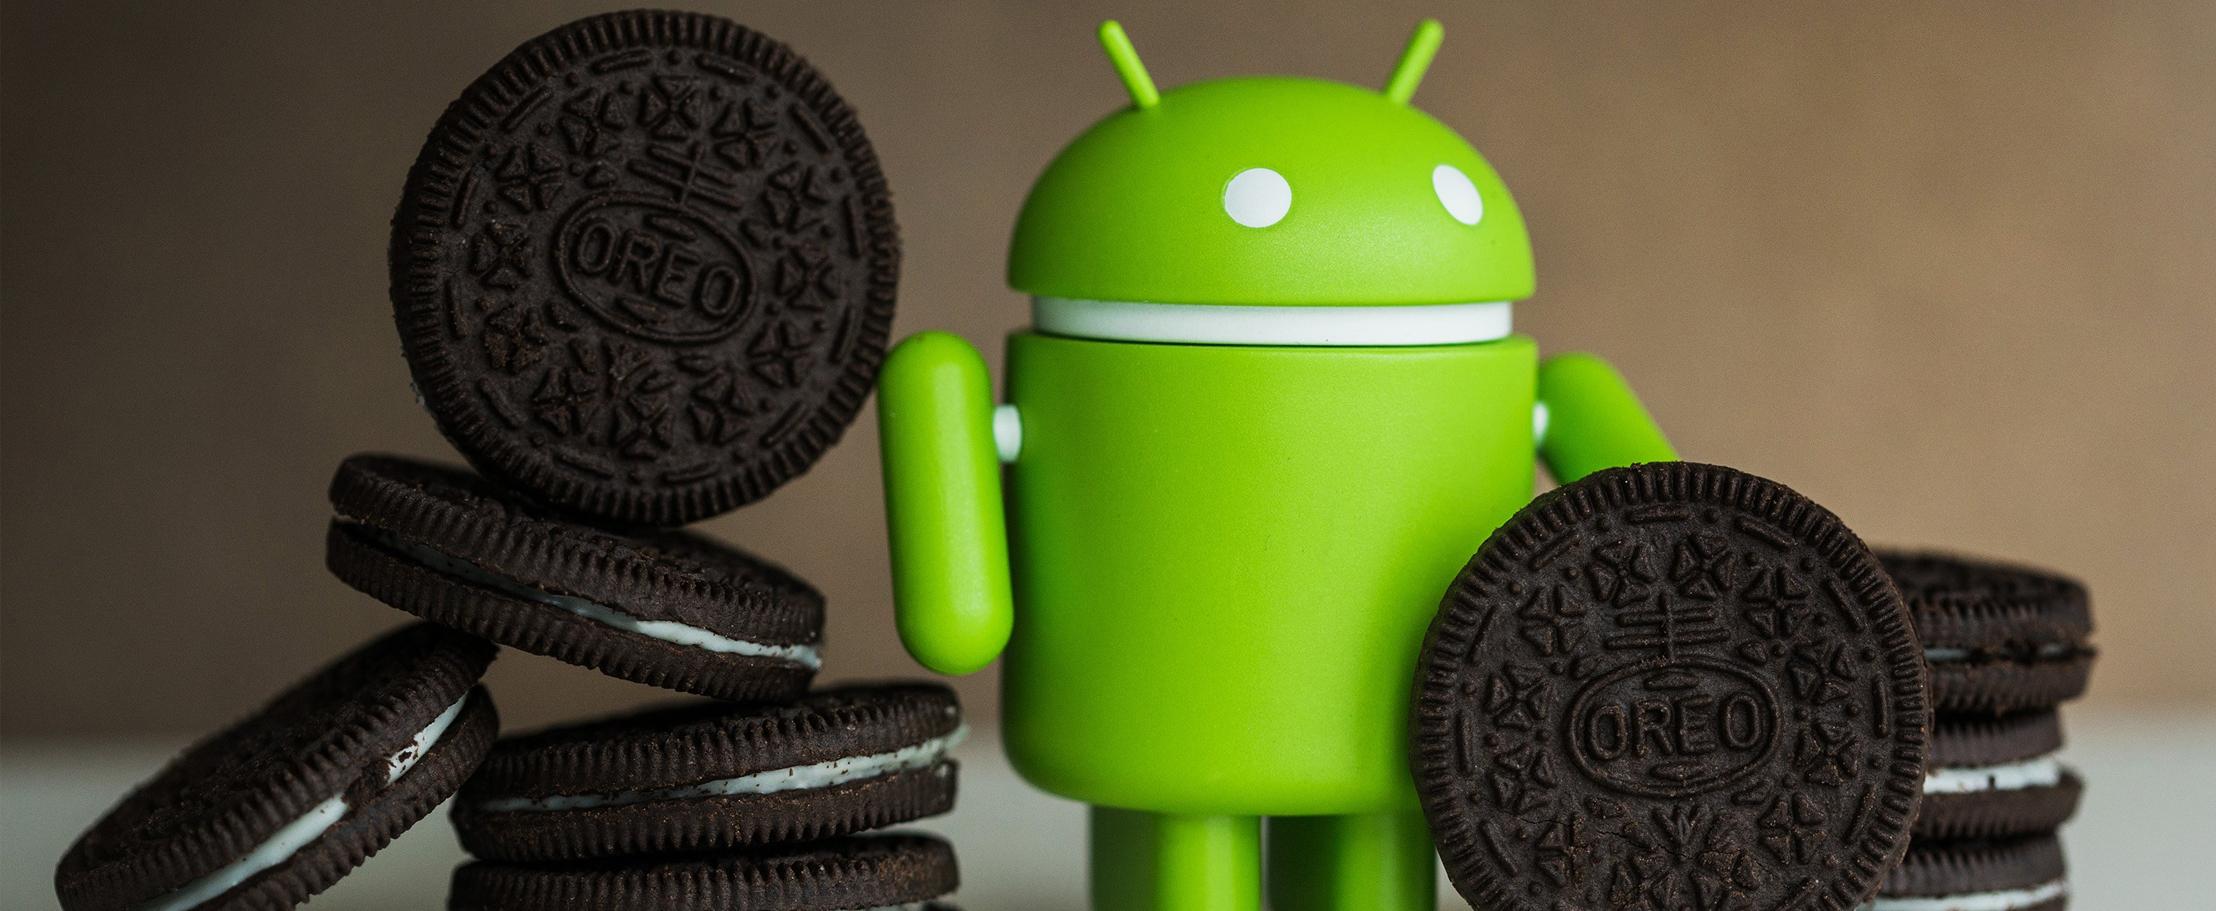 Как скачать и установить Android 8 прямо сейчас? И почему этого не стоит делать?